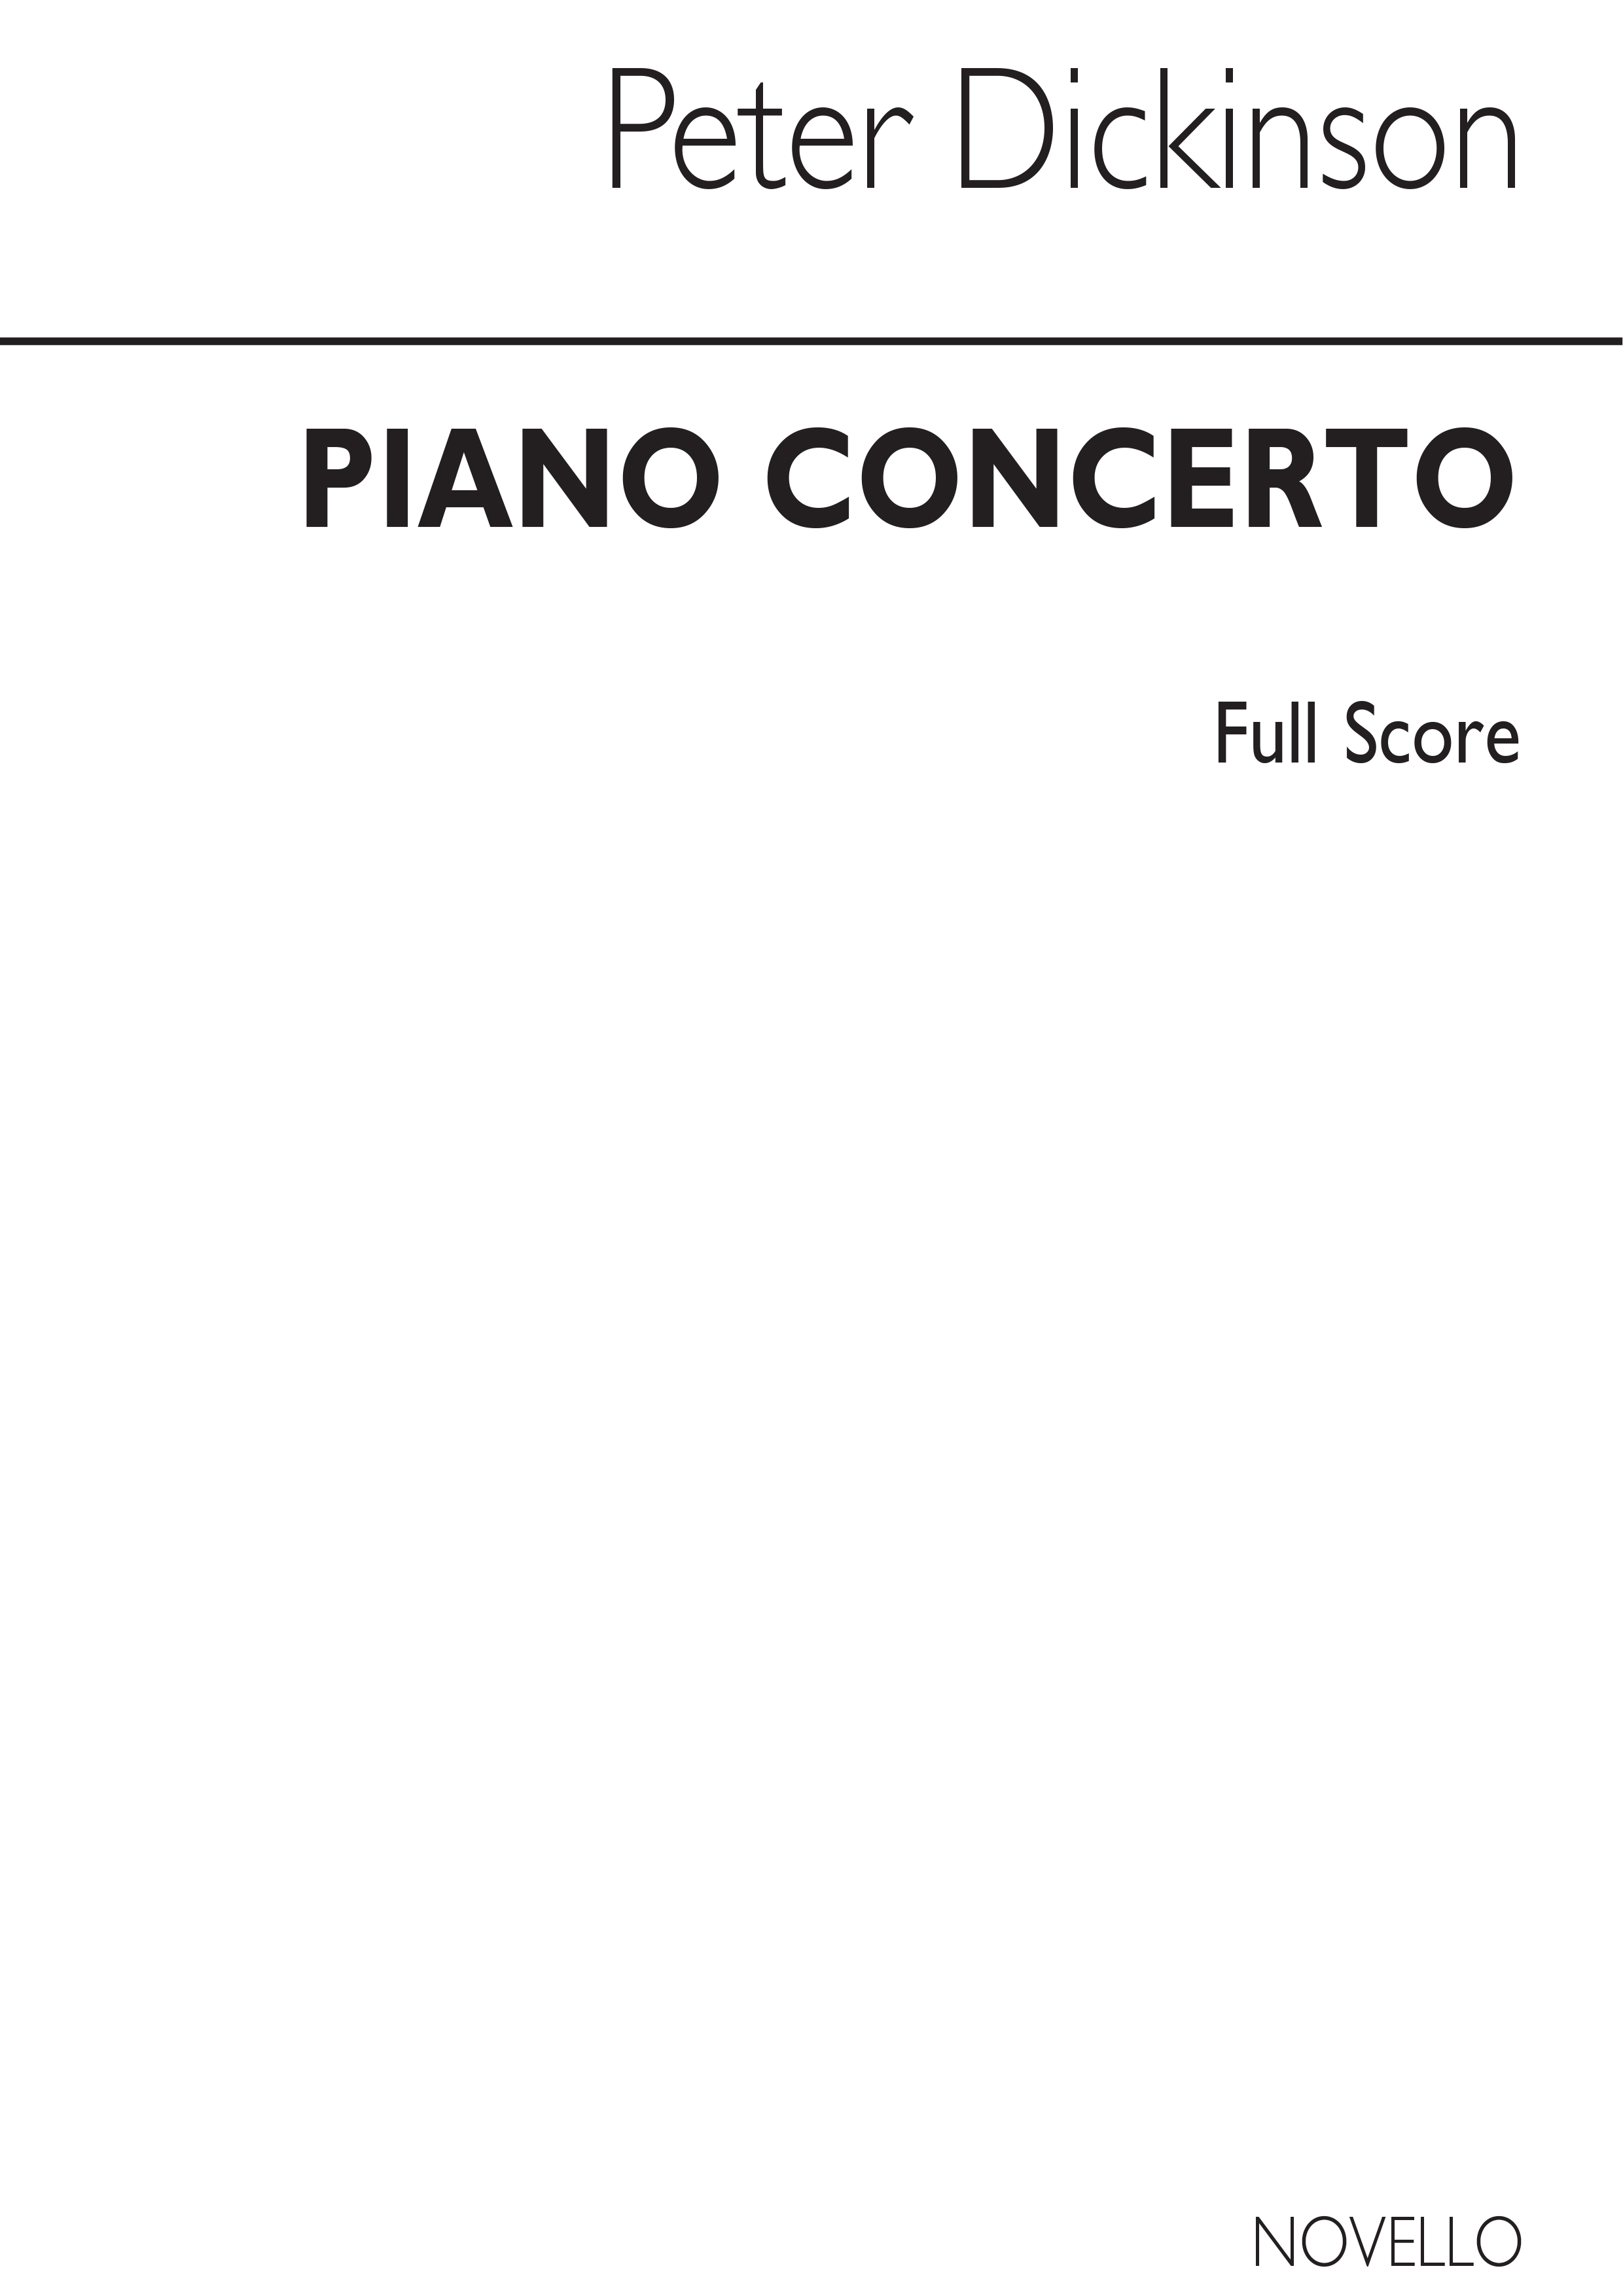 Dickinson: Concerto For Piano (Study Score)